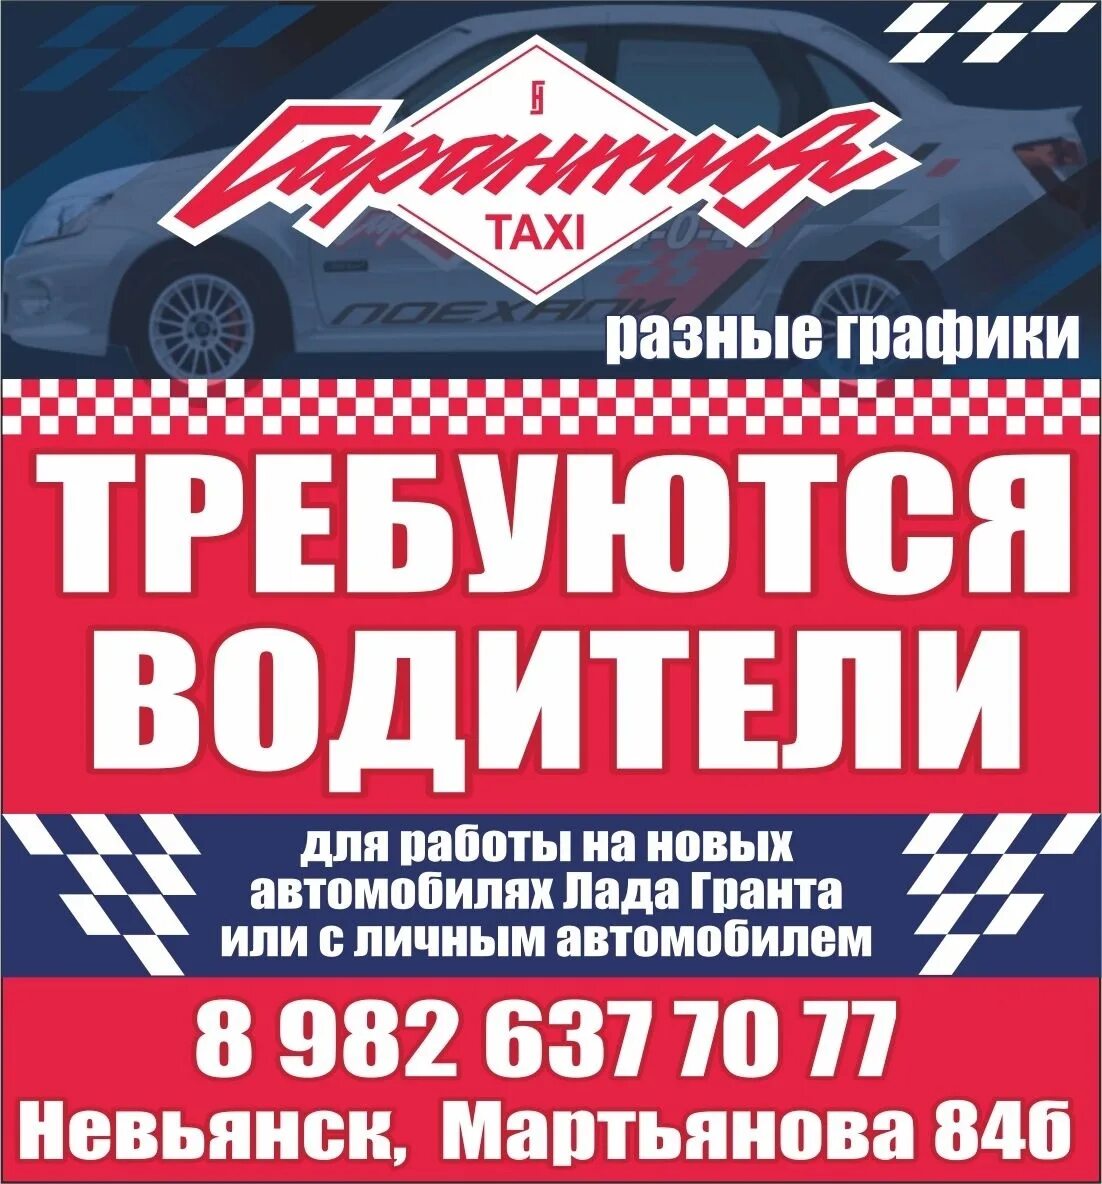 Такси невьянск номер телефона. Такси гарантия Невьянск. Такси Невьянск. Такси стандарт Невьянск. Такси гарантия.